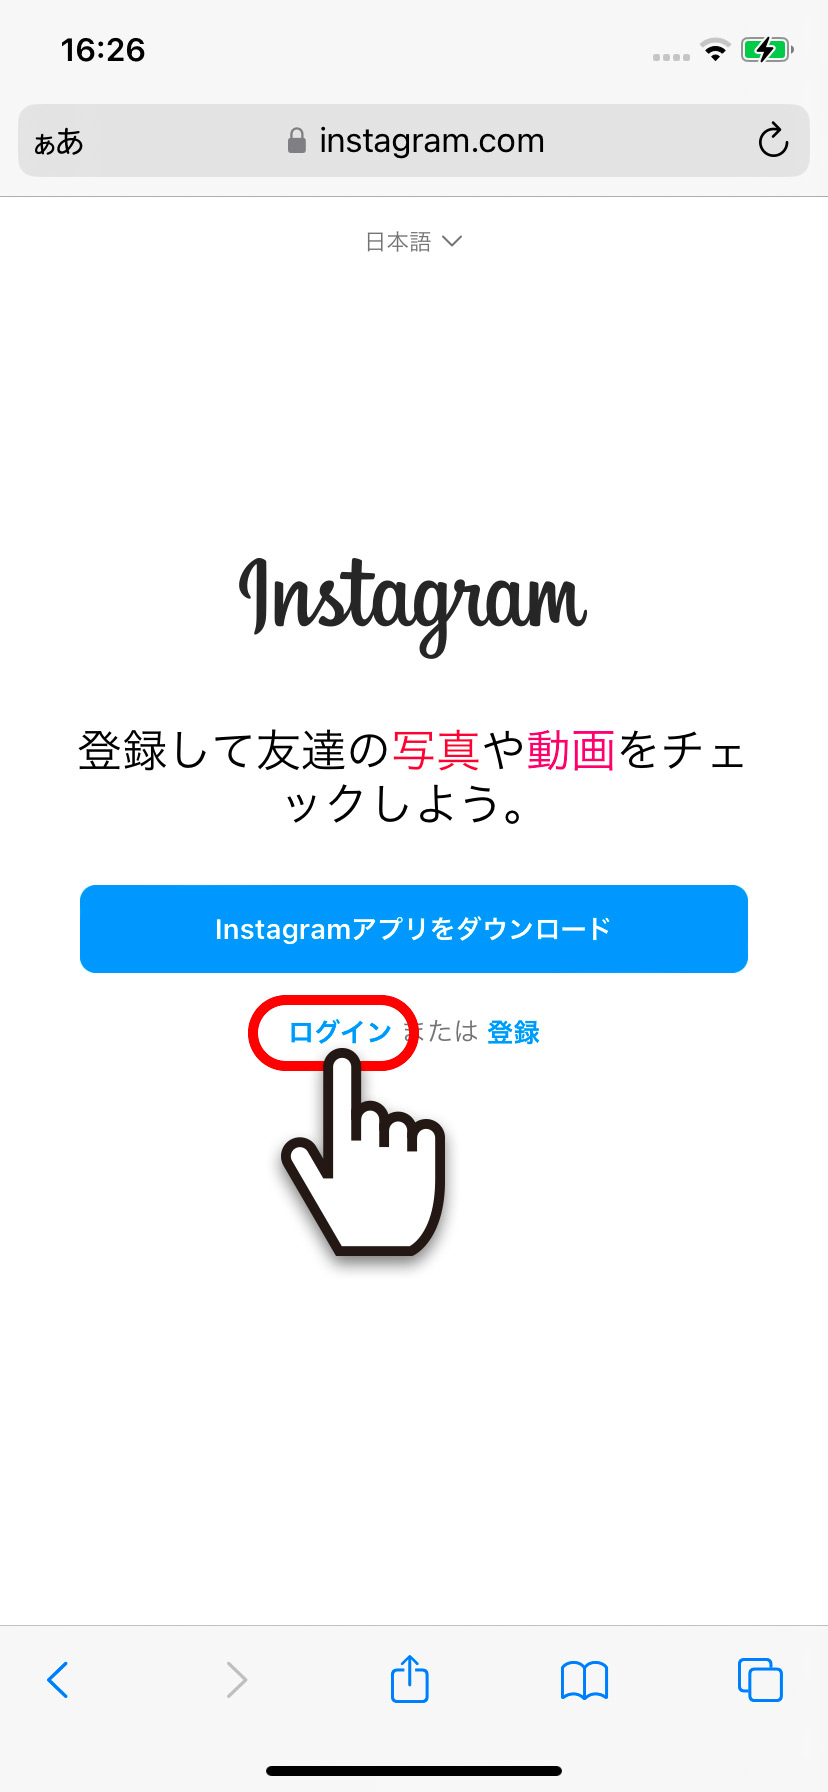 【iPhone】Instagram(インスタグラム)をブラウザで開く